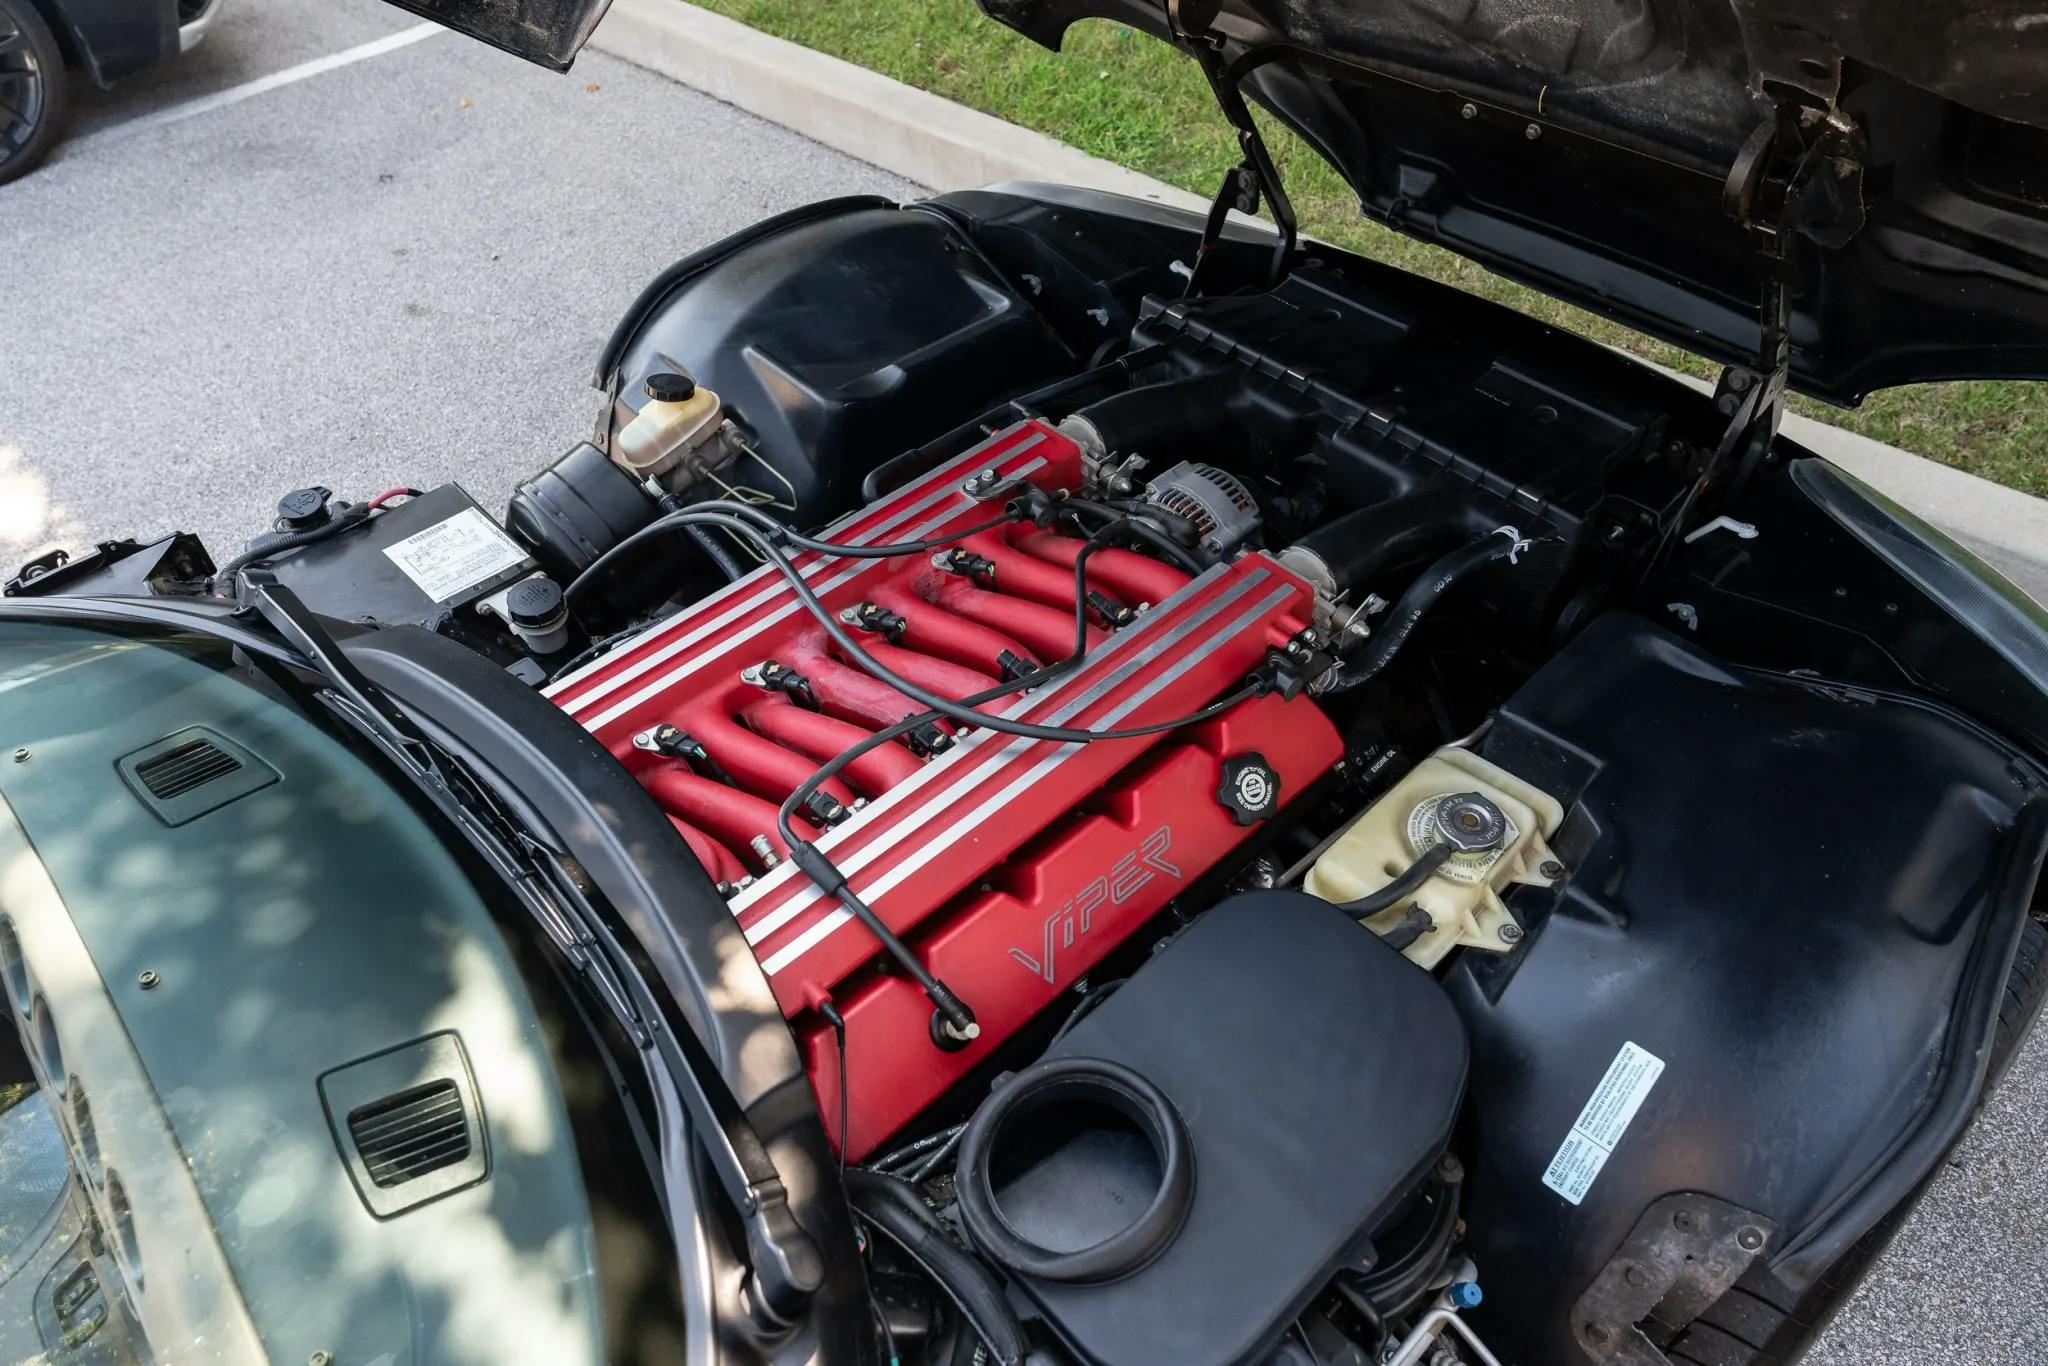 Chris Farley Dodge Viper celebrity car engine